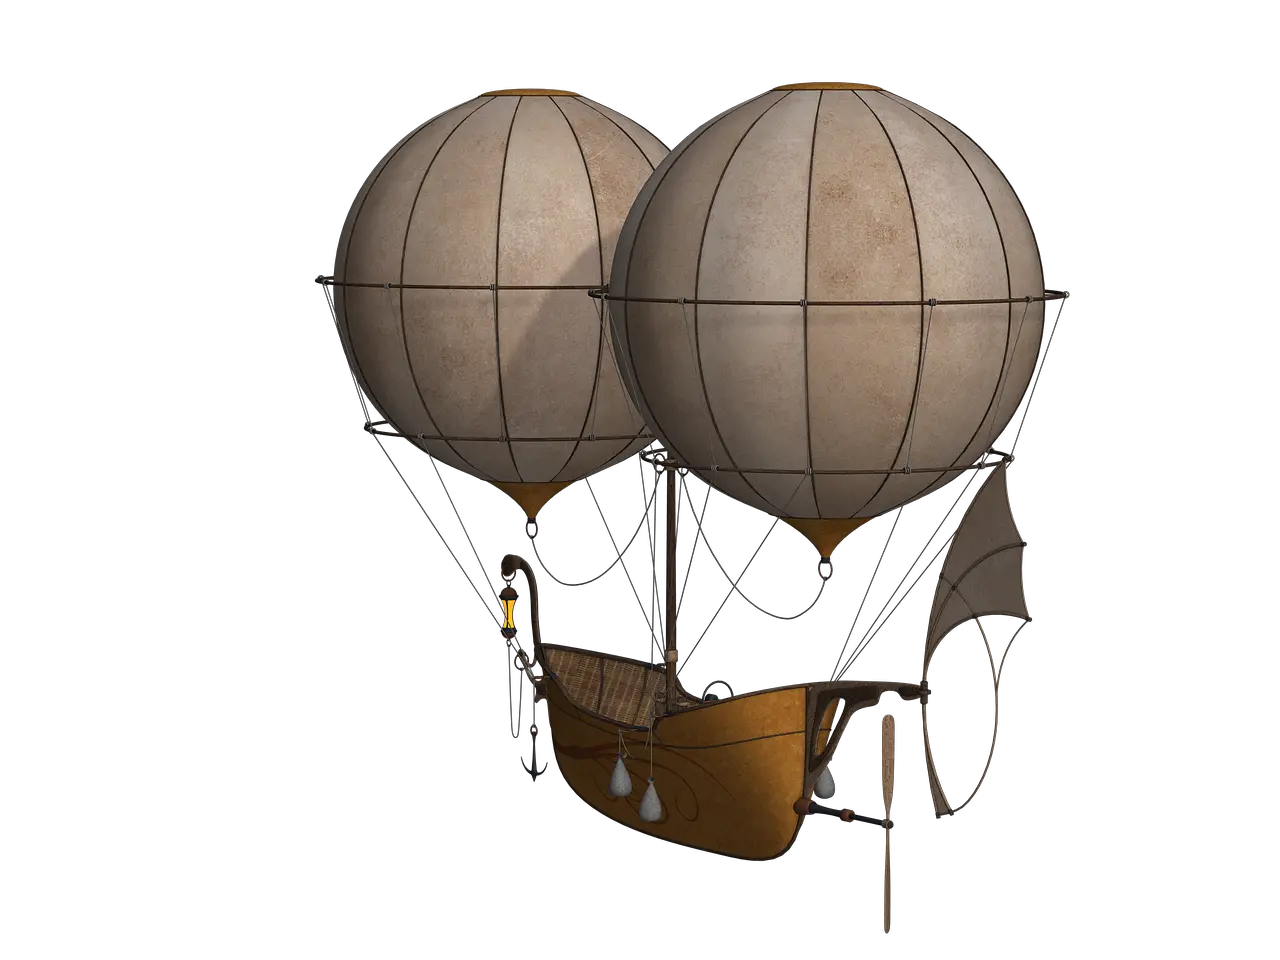 Hot Air Balloon Aircraft Free Image On Pixabay Steampunk Hot Air Balloon Png Up Balloons Png